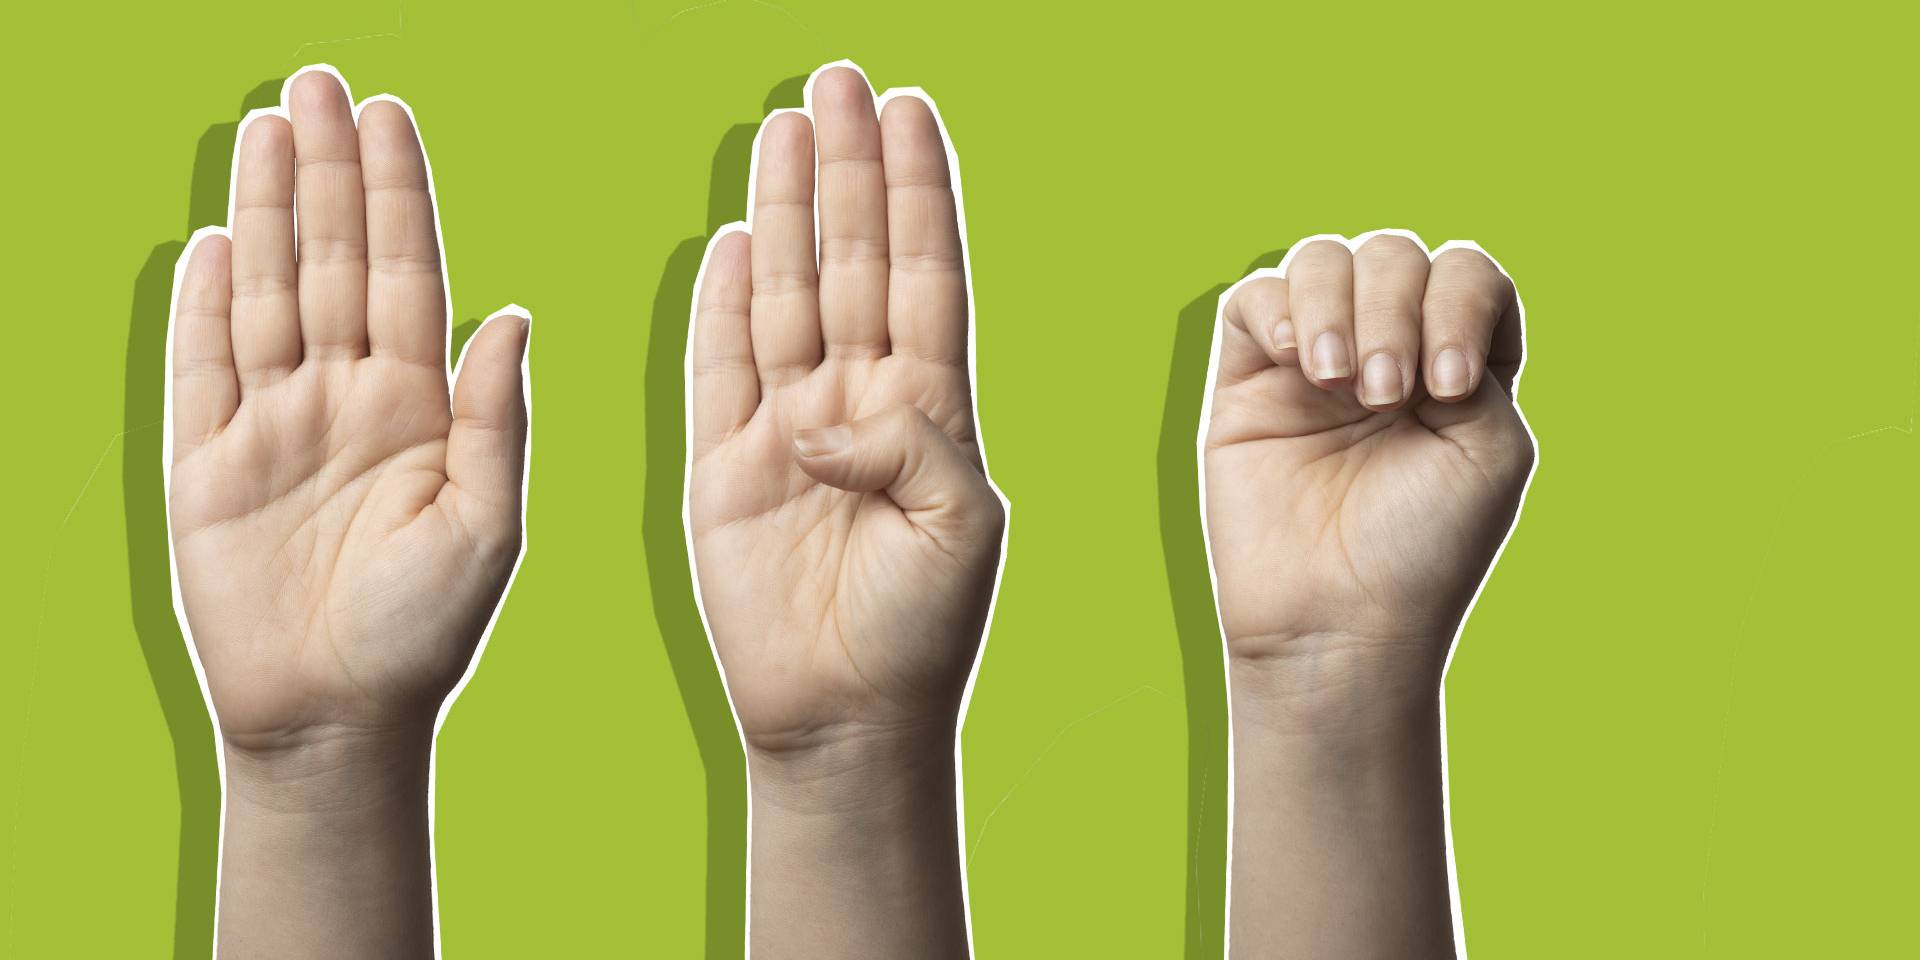 Orange Day - Gegen Gewalt an Frauen Handzeichen: Diese Geste ist ein  Hilferuf von Frauen!